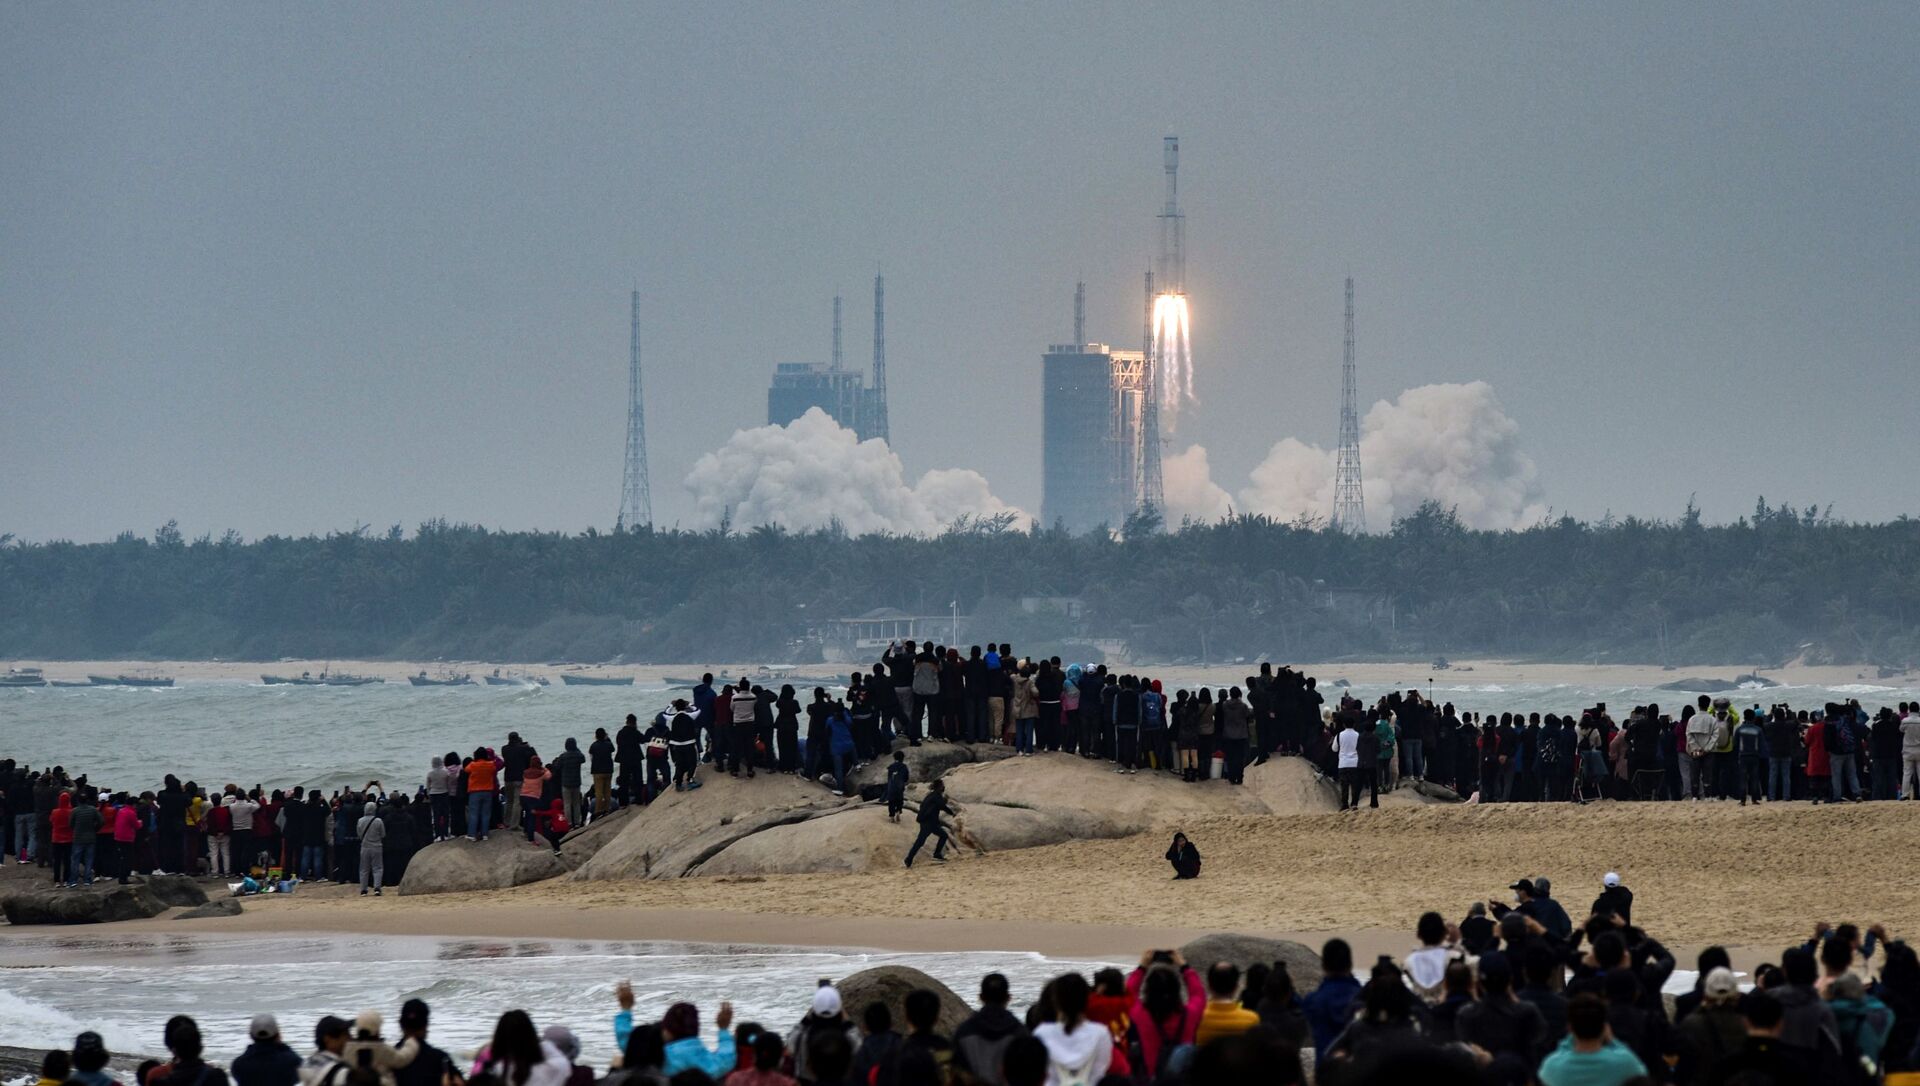 يشاهد الناس صاروخ لونع مارتش، وهو أحدث أسطول لمركبات الإطلاق الصينية لونع مارتش-8، وهو ينطلق من مركز وينشانغ للإطلاق الفضائي في مقاطعة هاينان جنوب الصين في 22 ديسمبر 2020. - سبوتنيك عربي, 1920, 18.10.2021